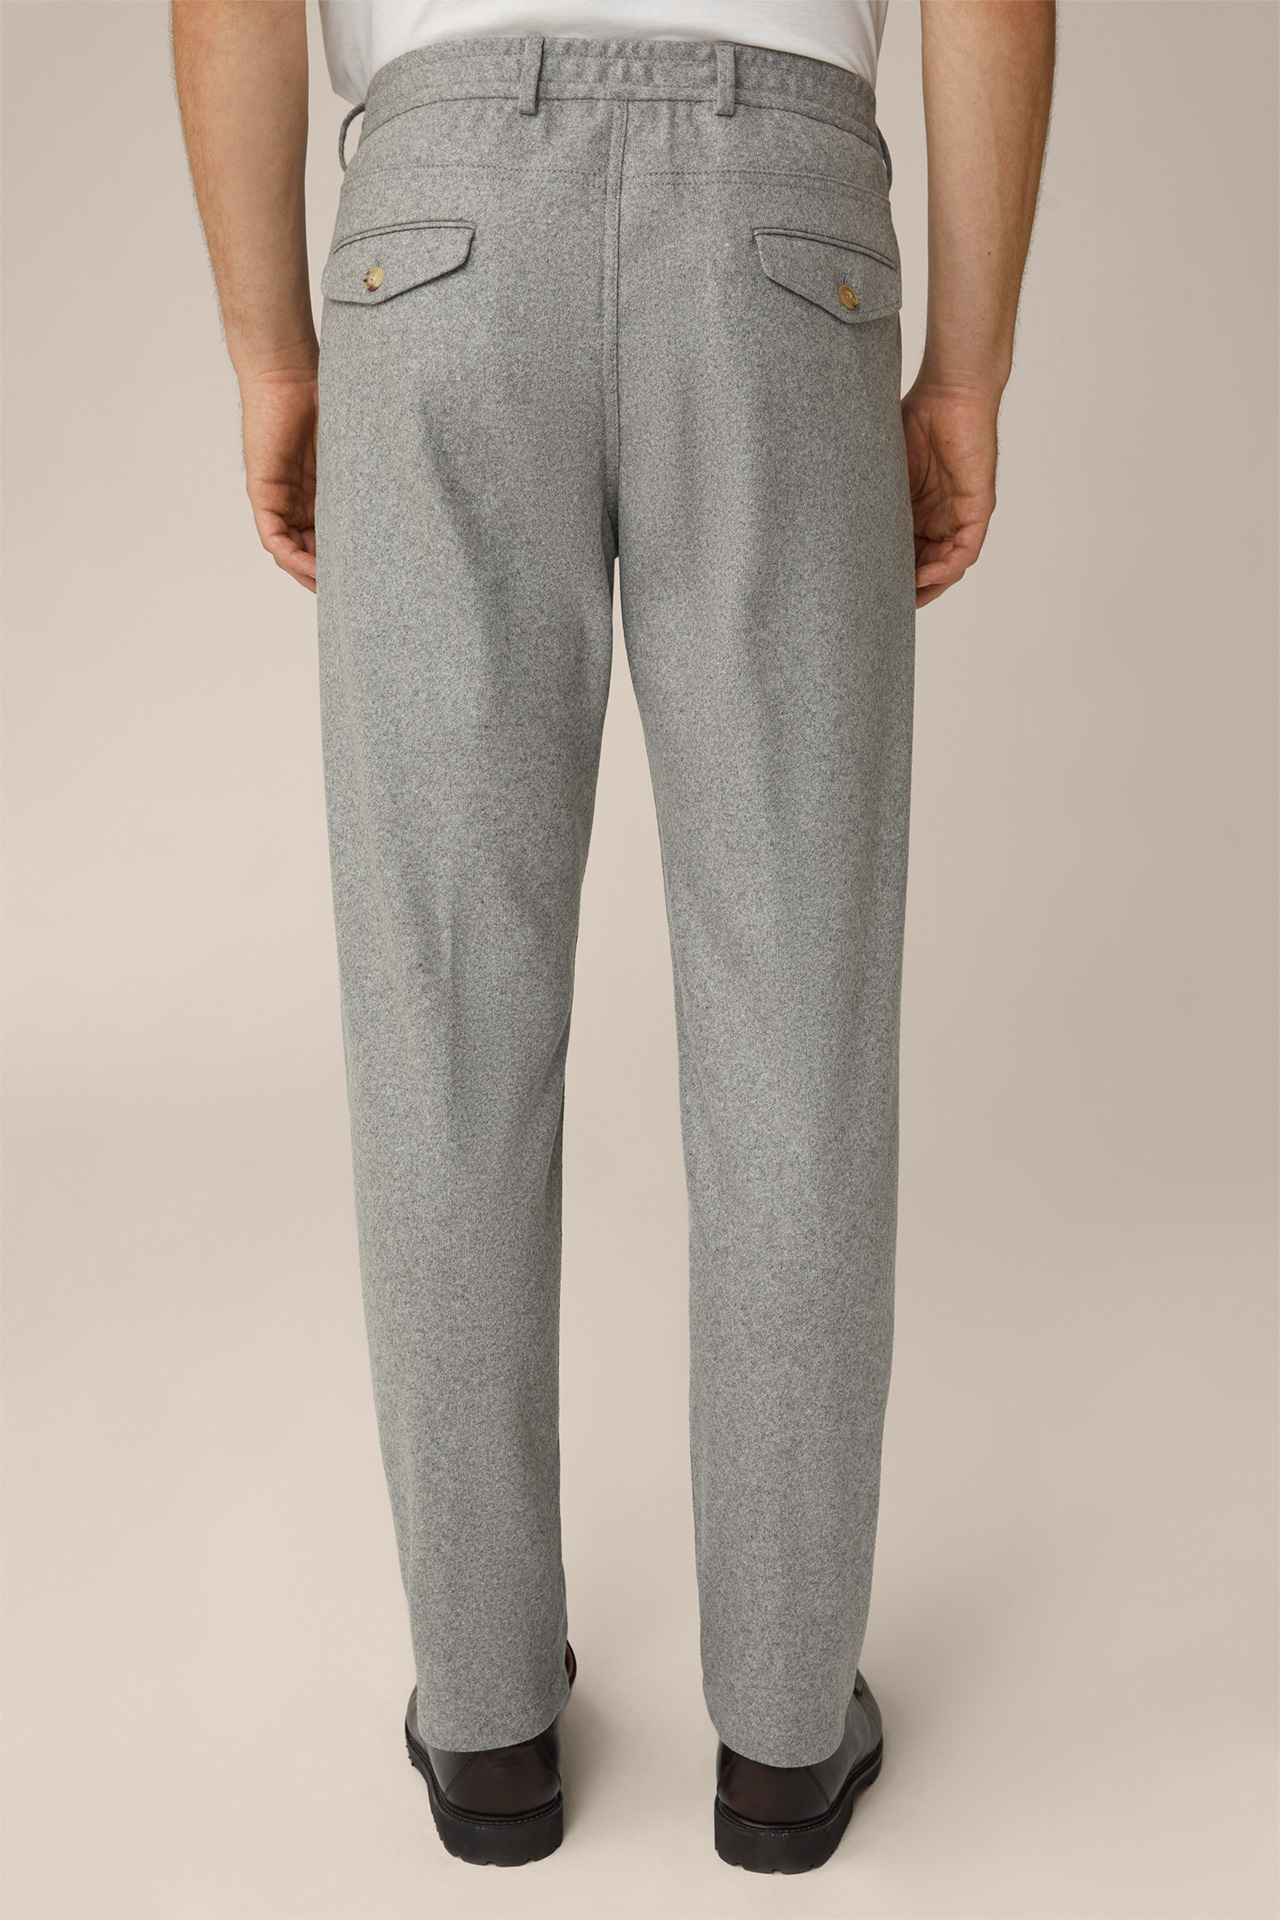 Pantalon à pinces modulable en cachemire Floro, en gris argenté chiné